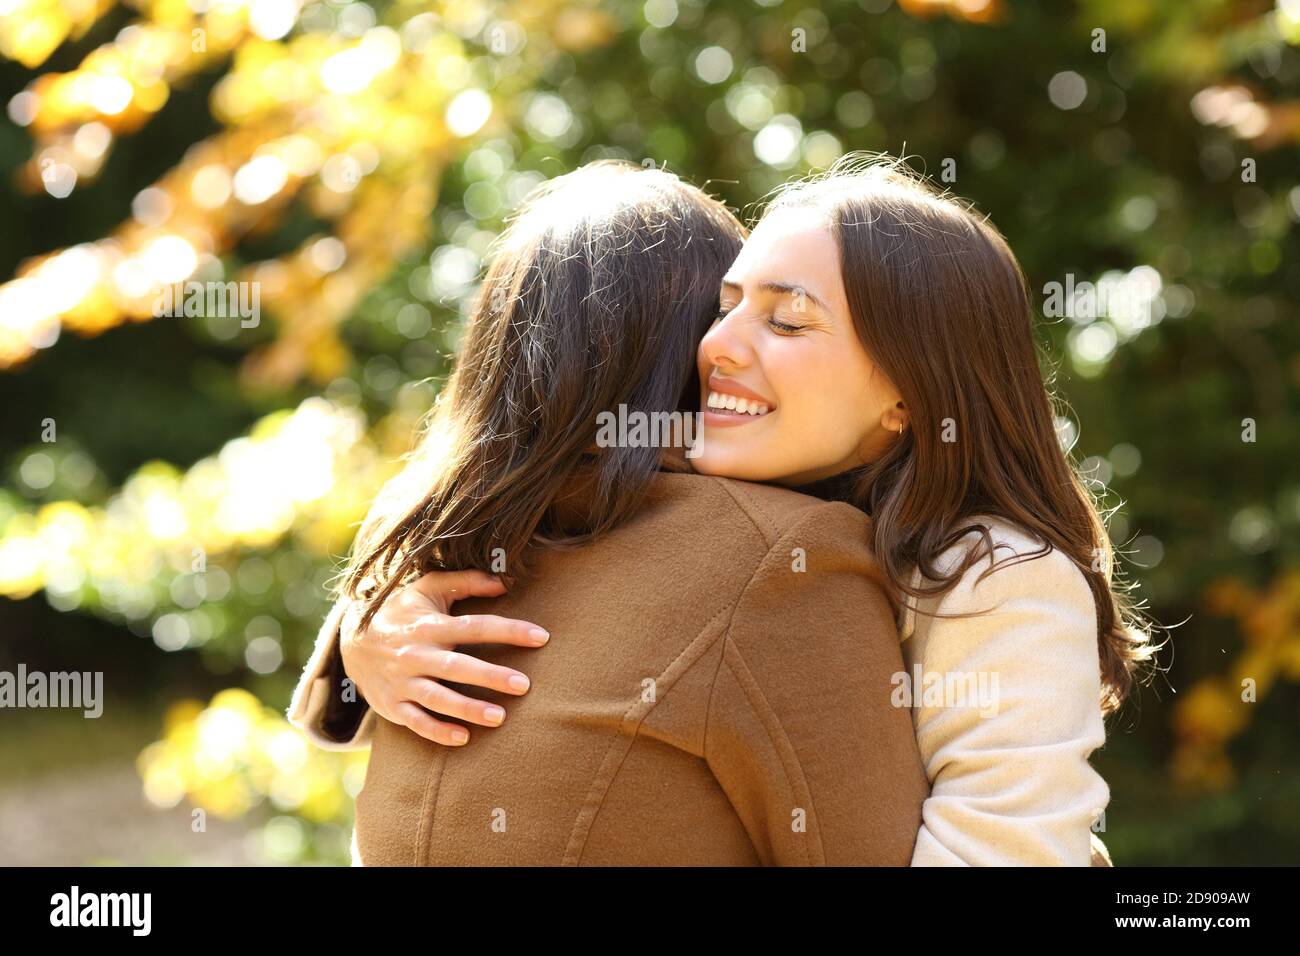 Glückliche Freunde treffen und umarmen in einem Park im Herbst Jahreszeit einen sonnigen Tag Stockfoto